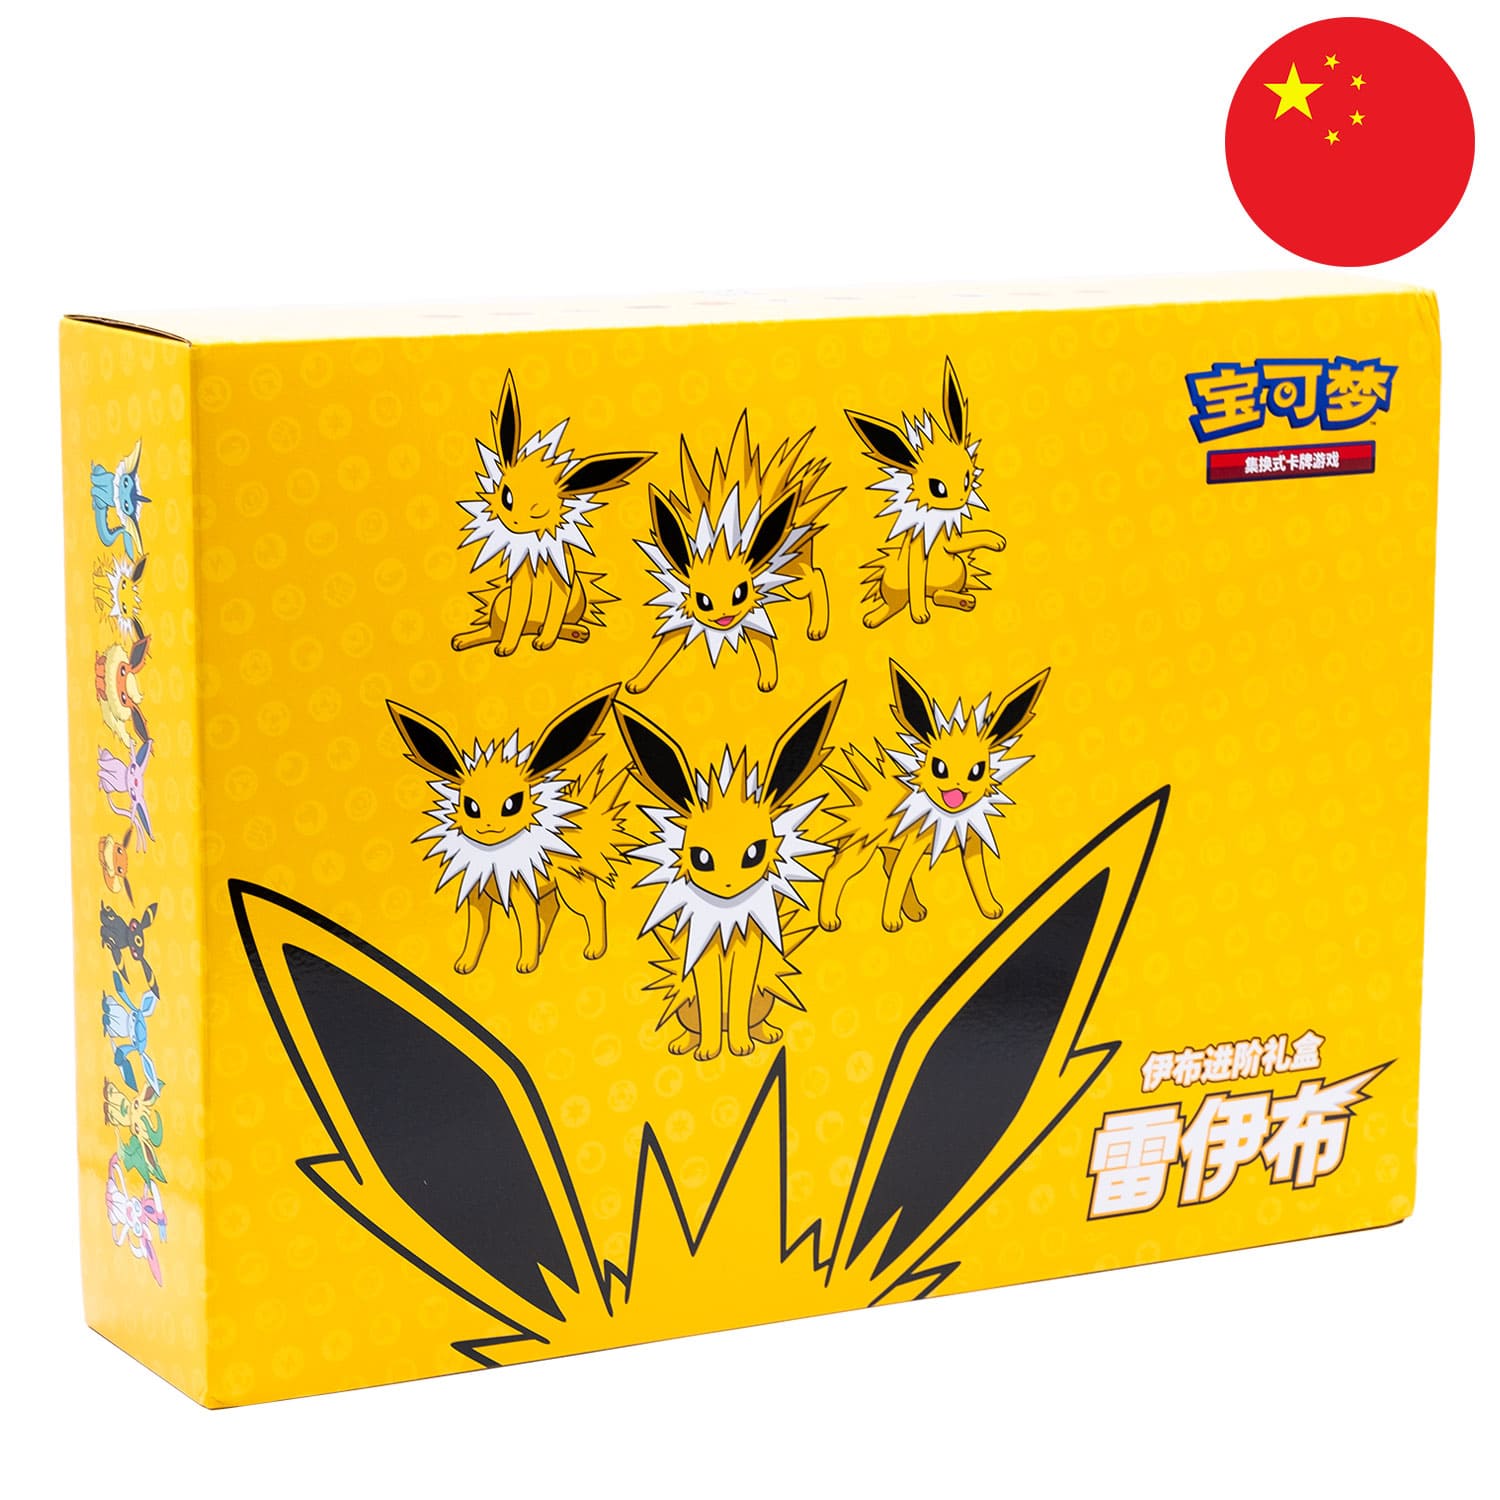 Die Pokemon Box Blitza (CSH2) in gelb, frontal&schräg als Hauptbild, mit dem Bild Chinas als rundes Icon in der Ecke.